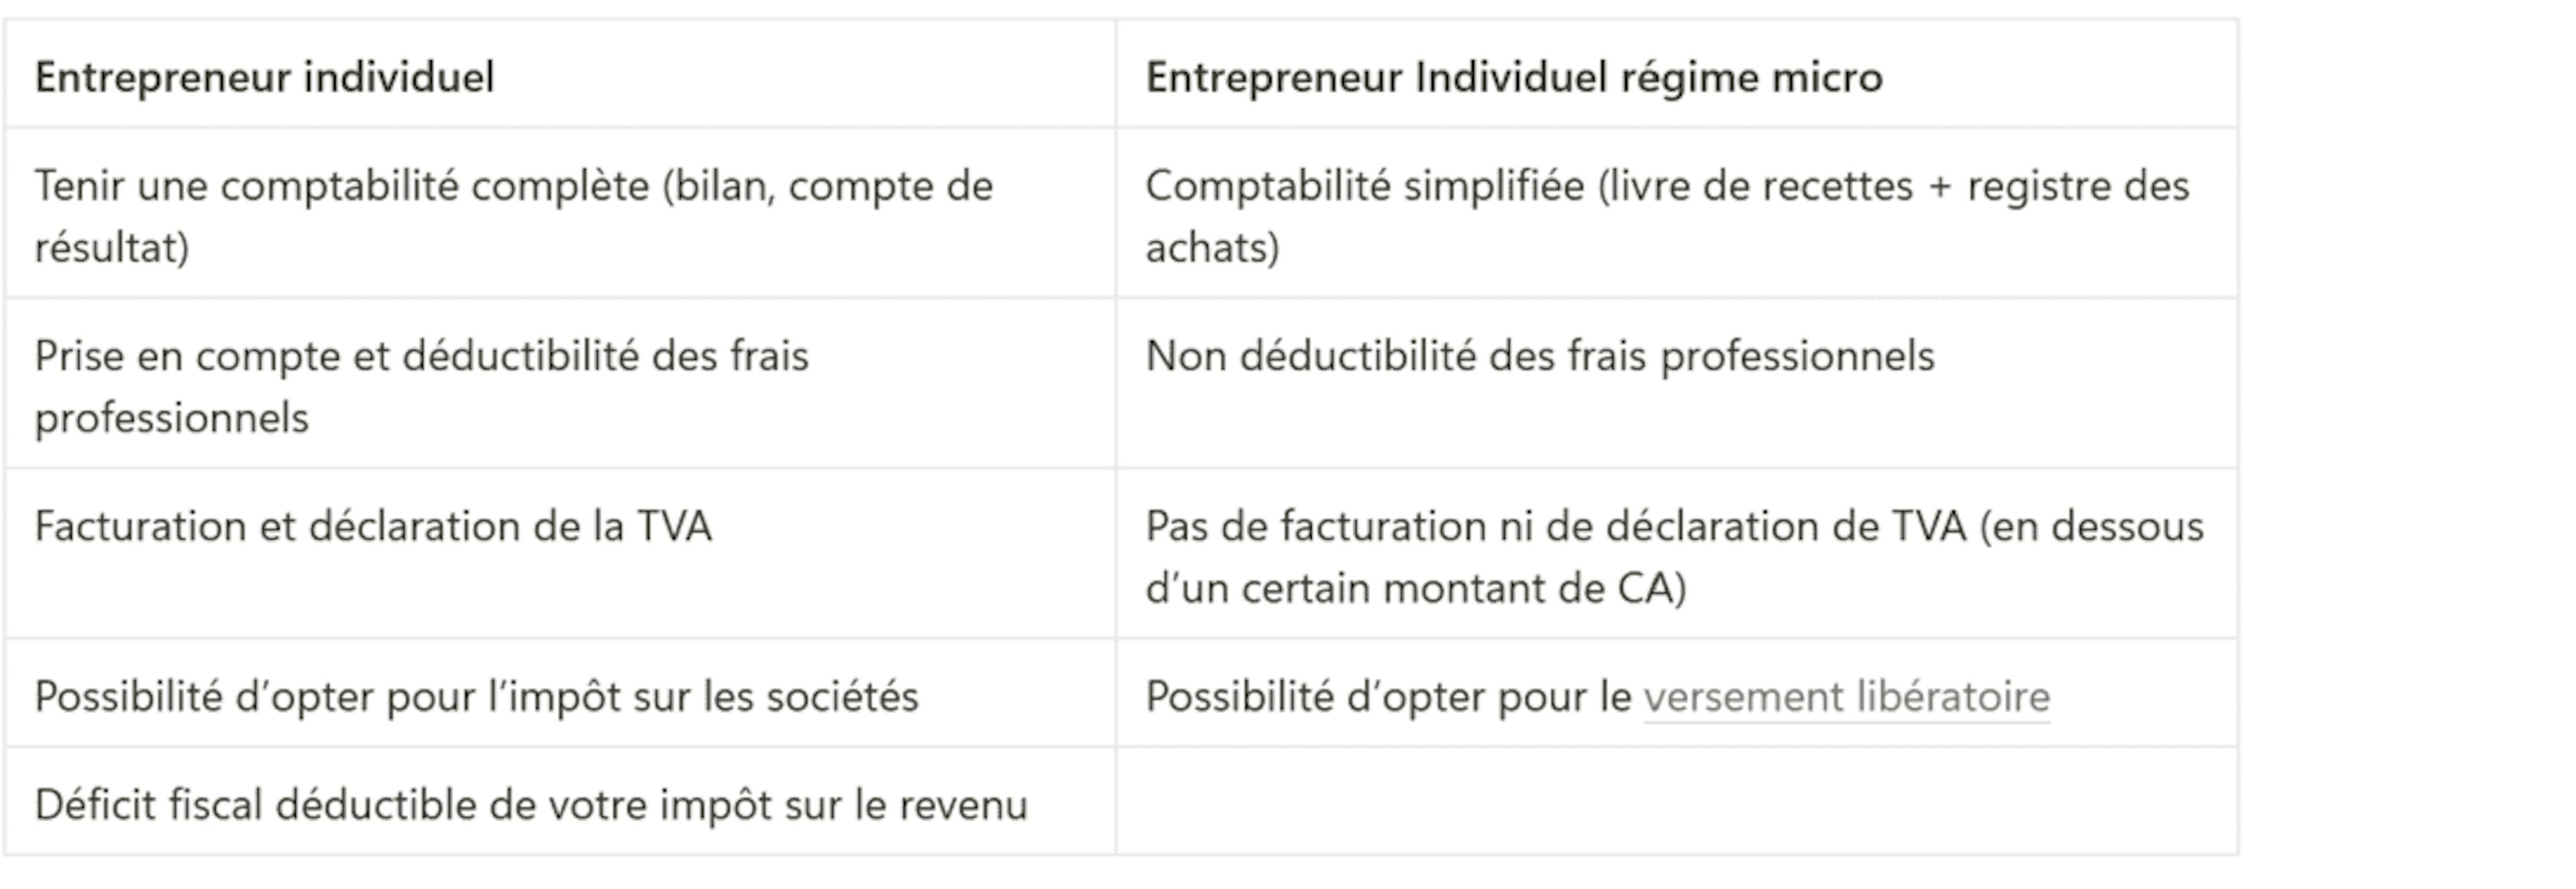 Tableau différences obligations comptables entre l'entrepreneur individuel et le micro-entrepreneur